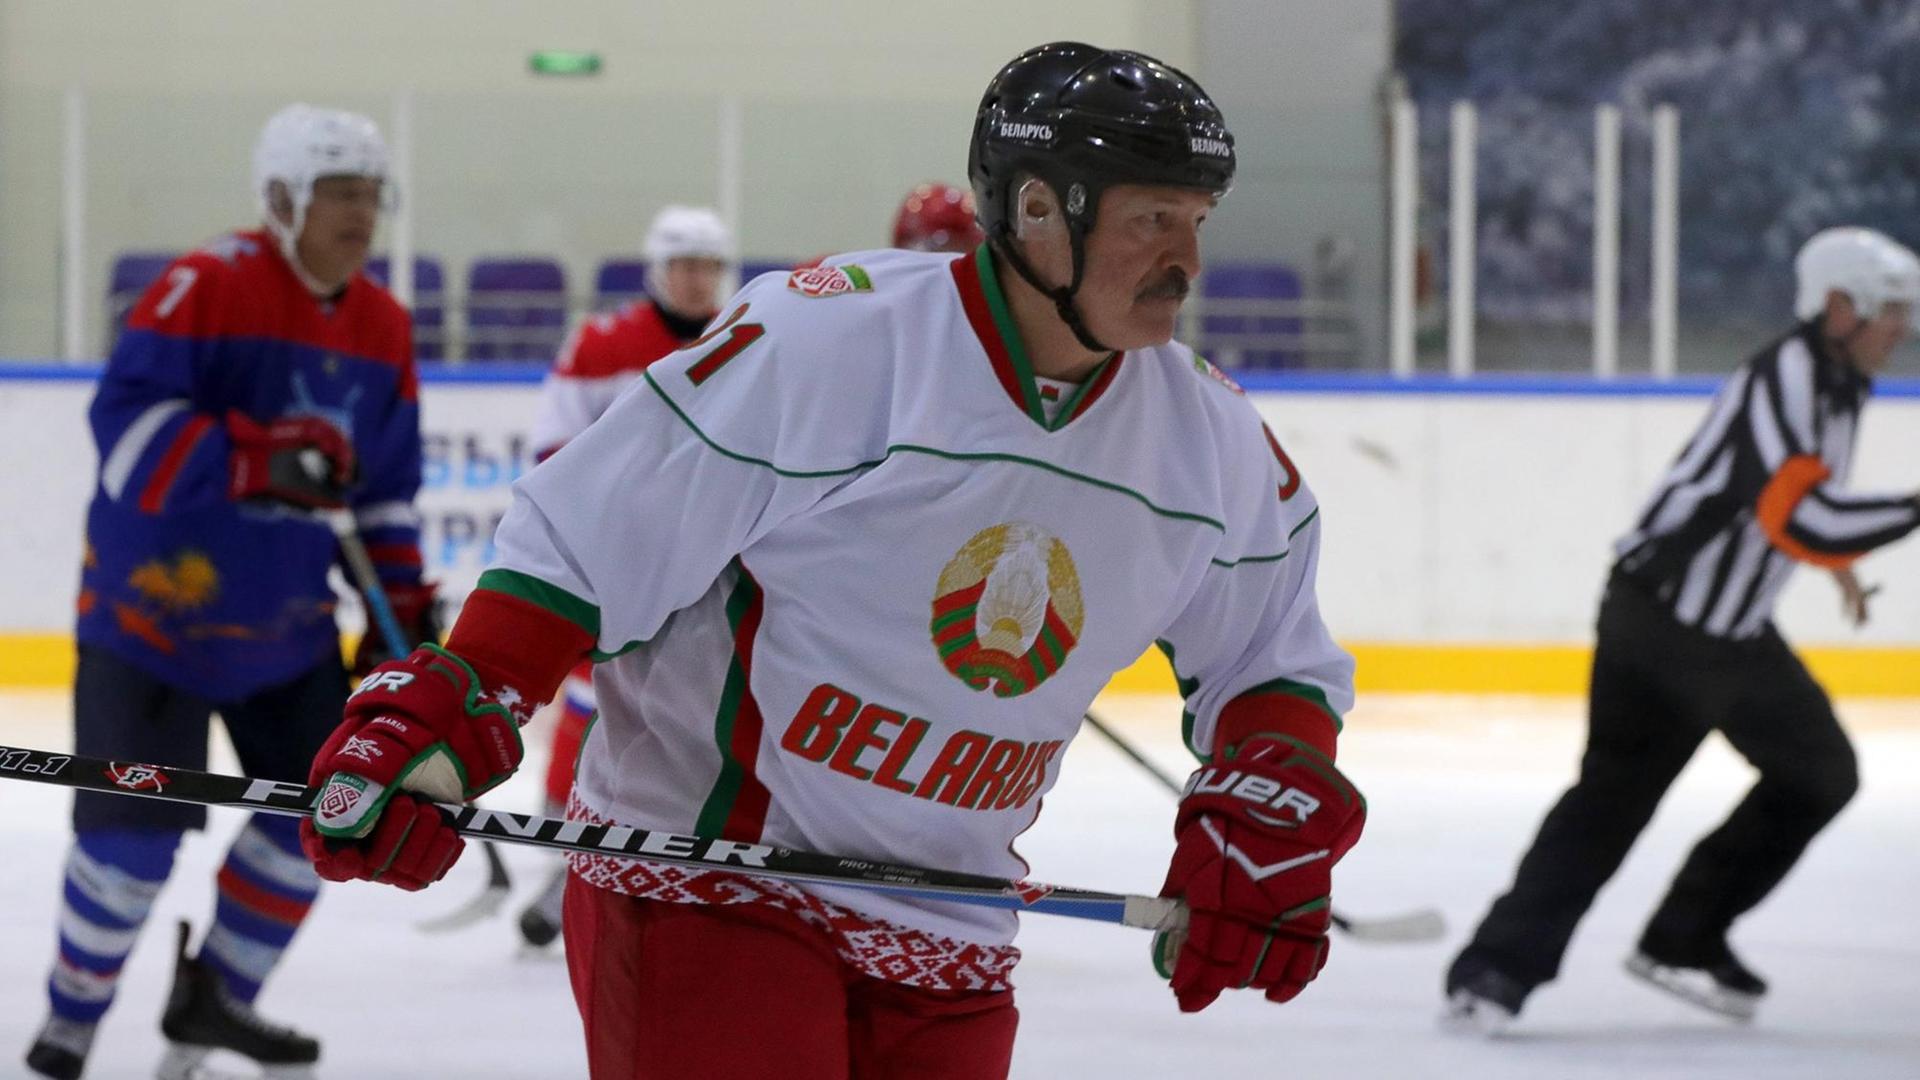 Der belarussische Präsident Alexander Lukaschenko spielt am 7. Februar 2020 bei einem Freundschafts-Eishockeyspiel in Krasnaya Polyana (Russland) mit.